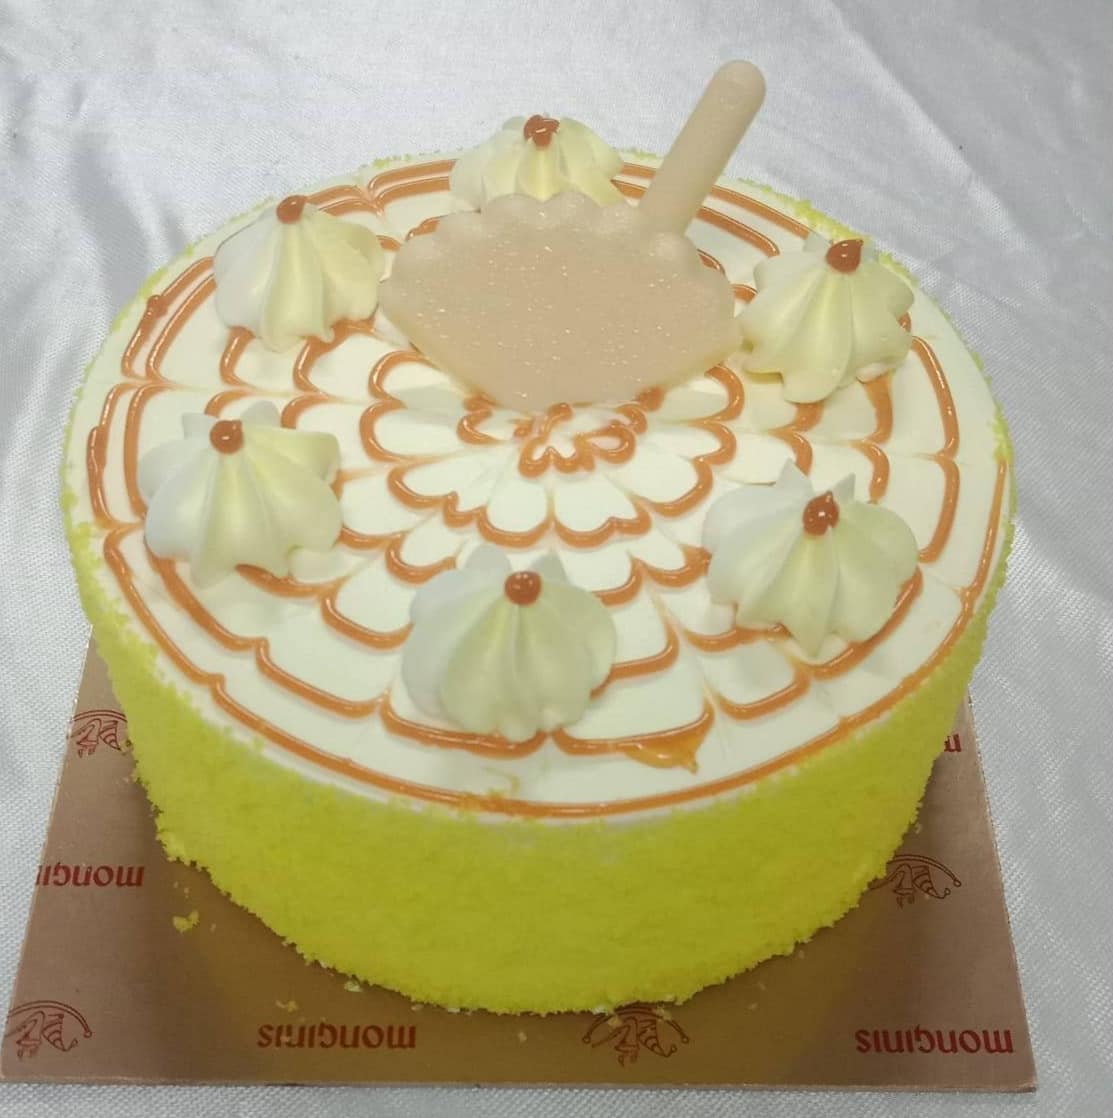 Monginis Cake Shop Powai Naka, Satara Locality order online - Zomato